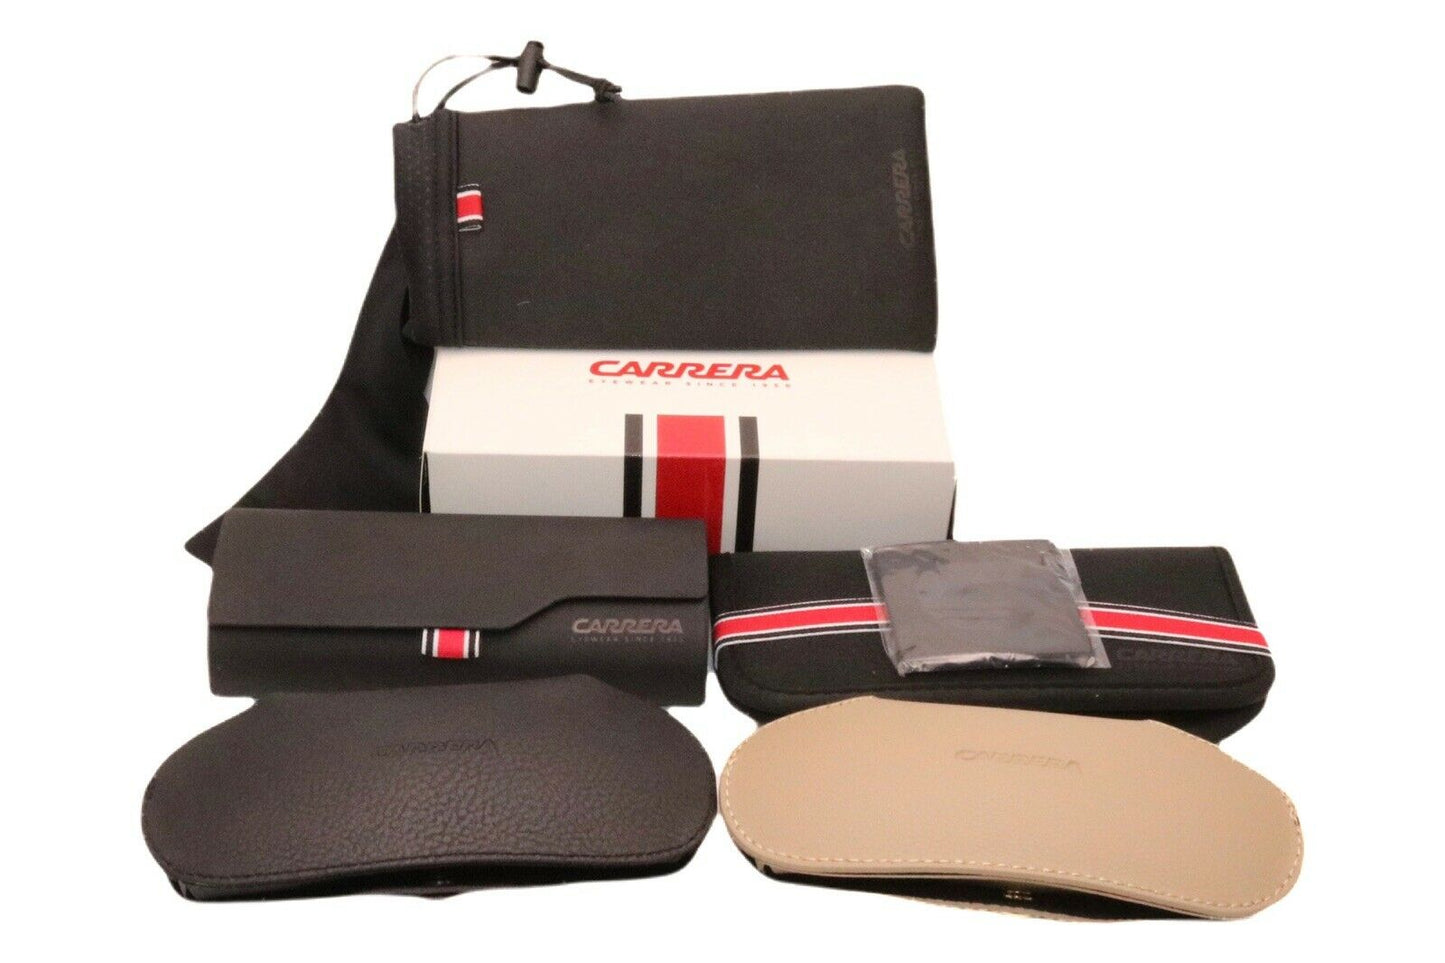 Carrera CARRERA 1050/S-080S 9O 63mm New Sunglasses